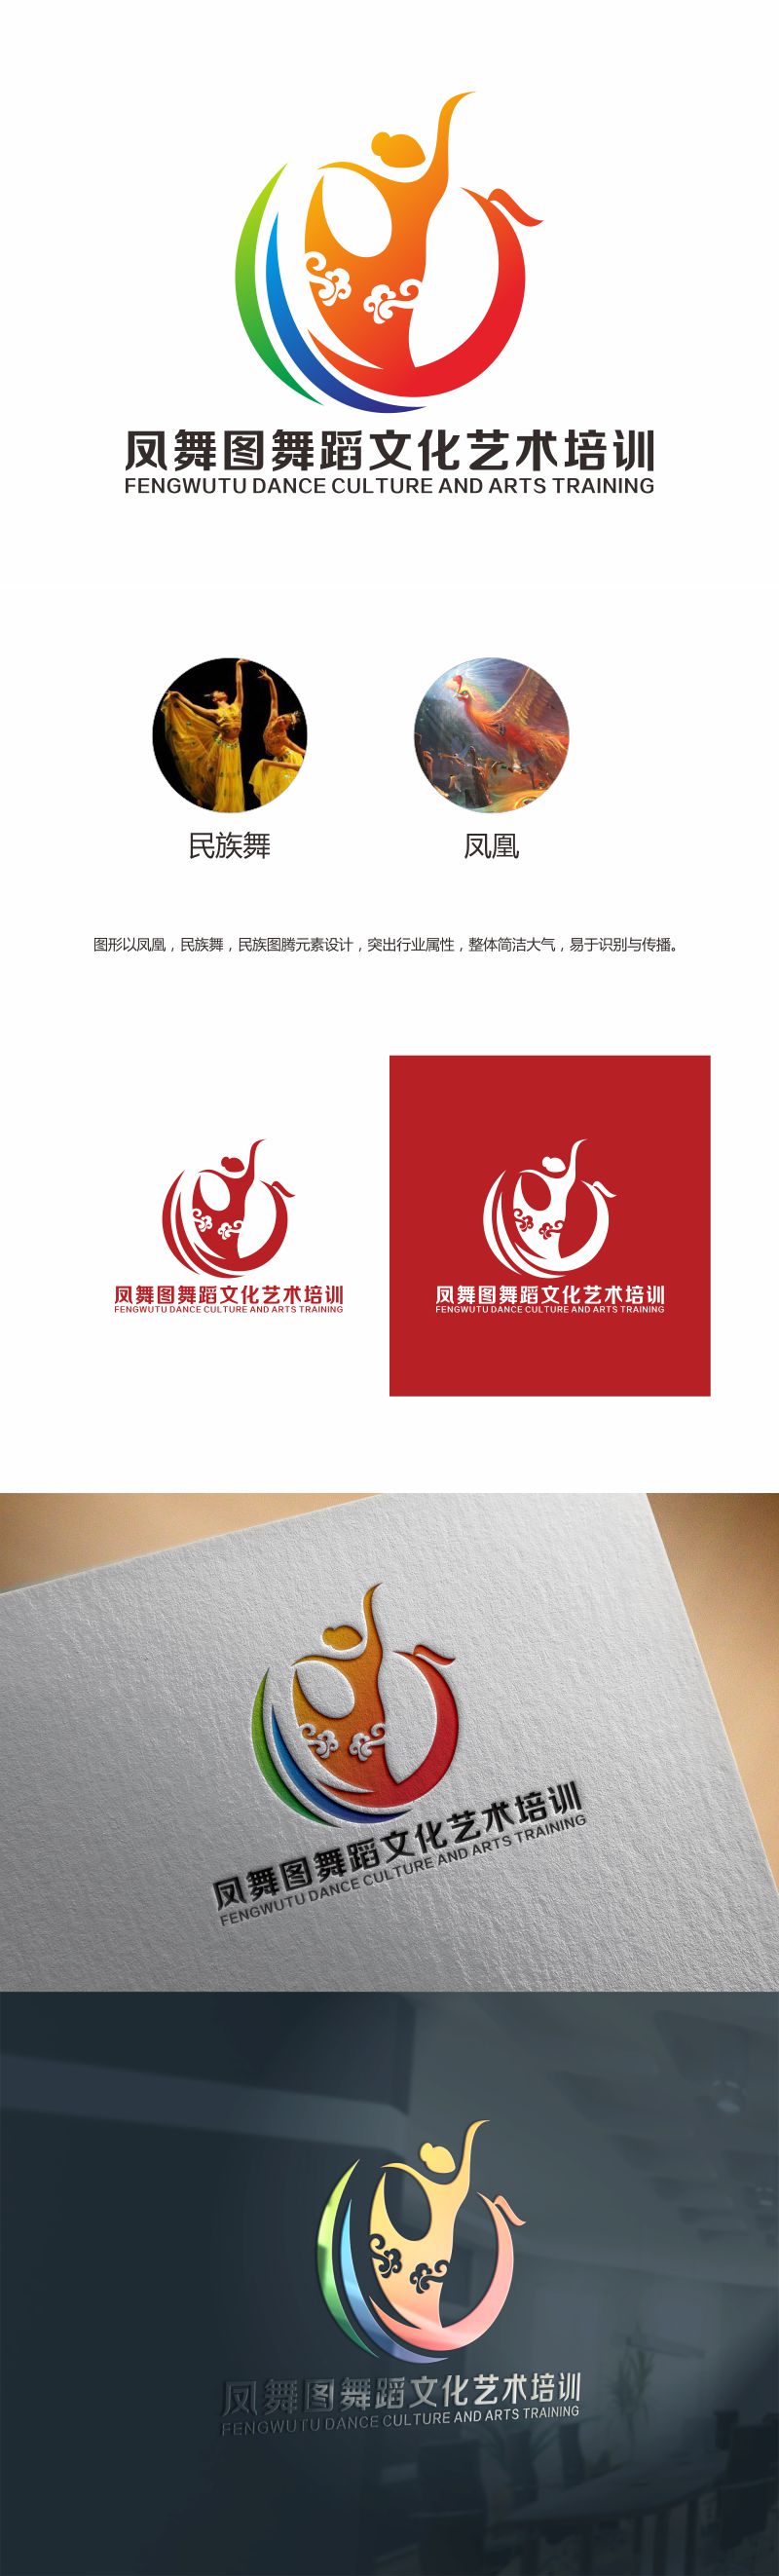 何嘉健的深圳市凤舞图舞蹈文化艺术培训有限公司logo设计